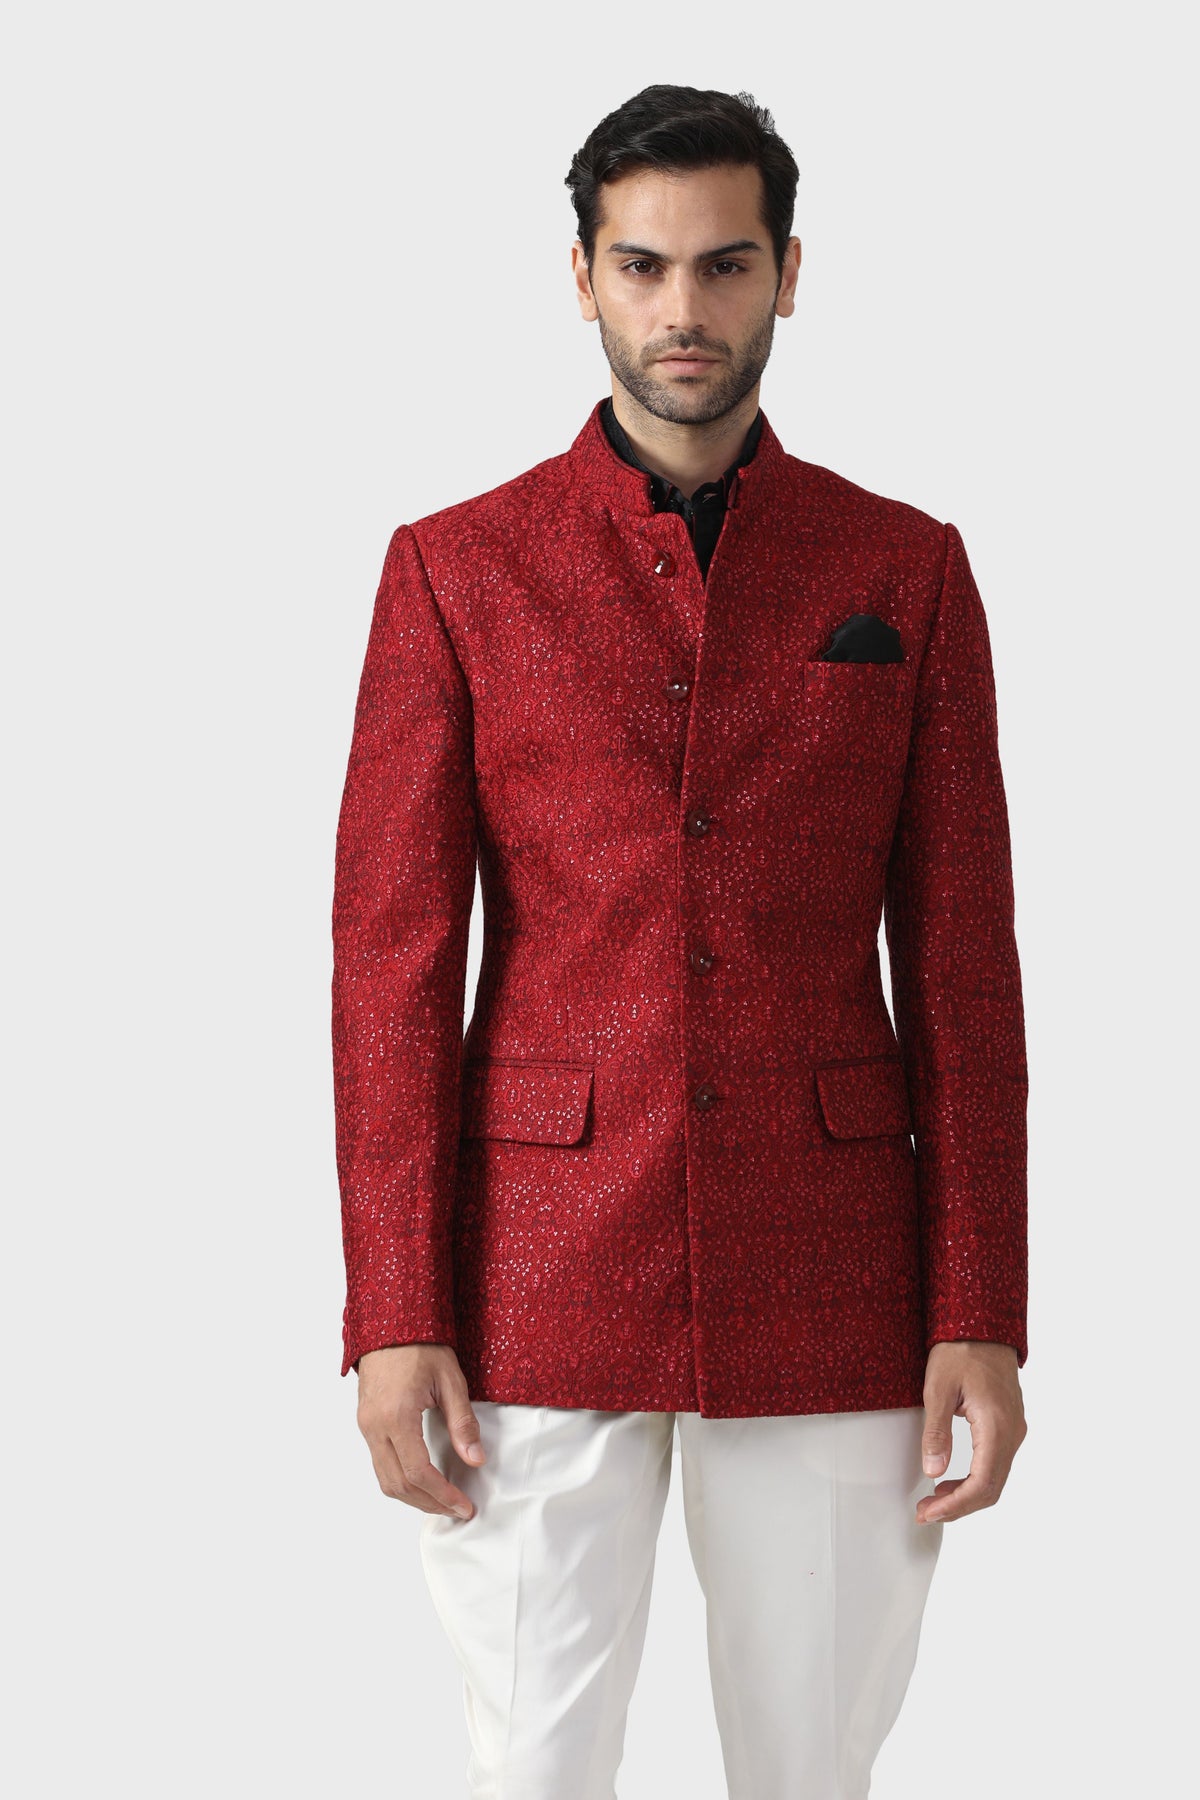 The Pompeiian Red Bandhgala Jacket